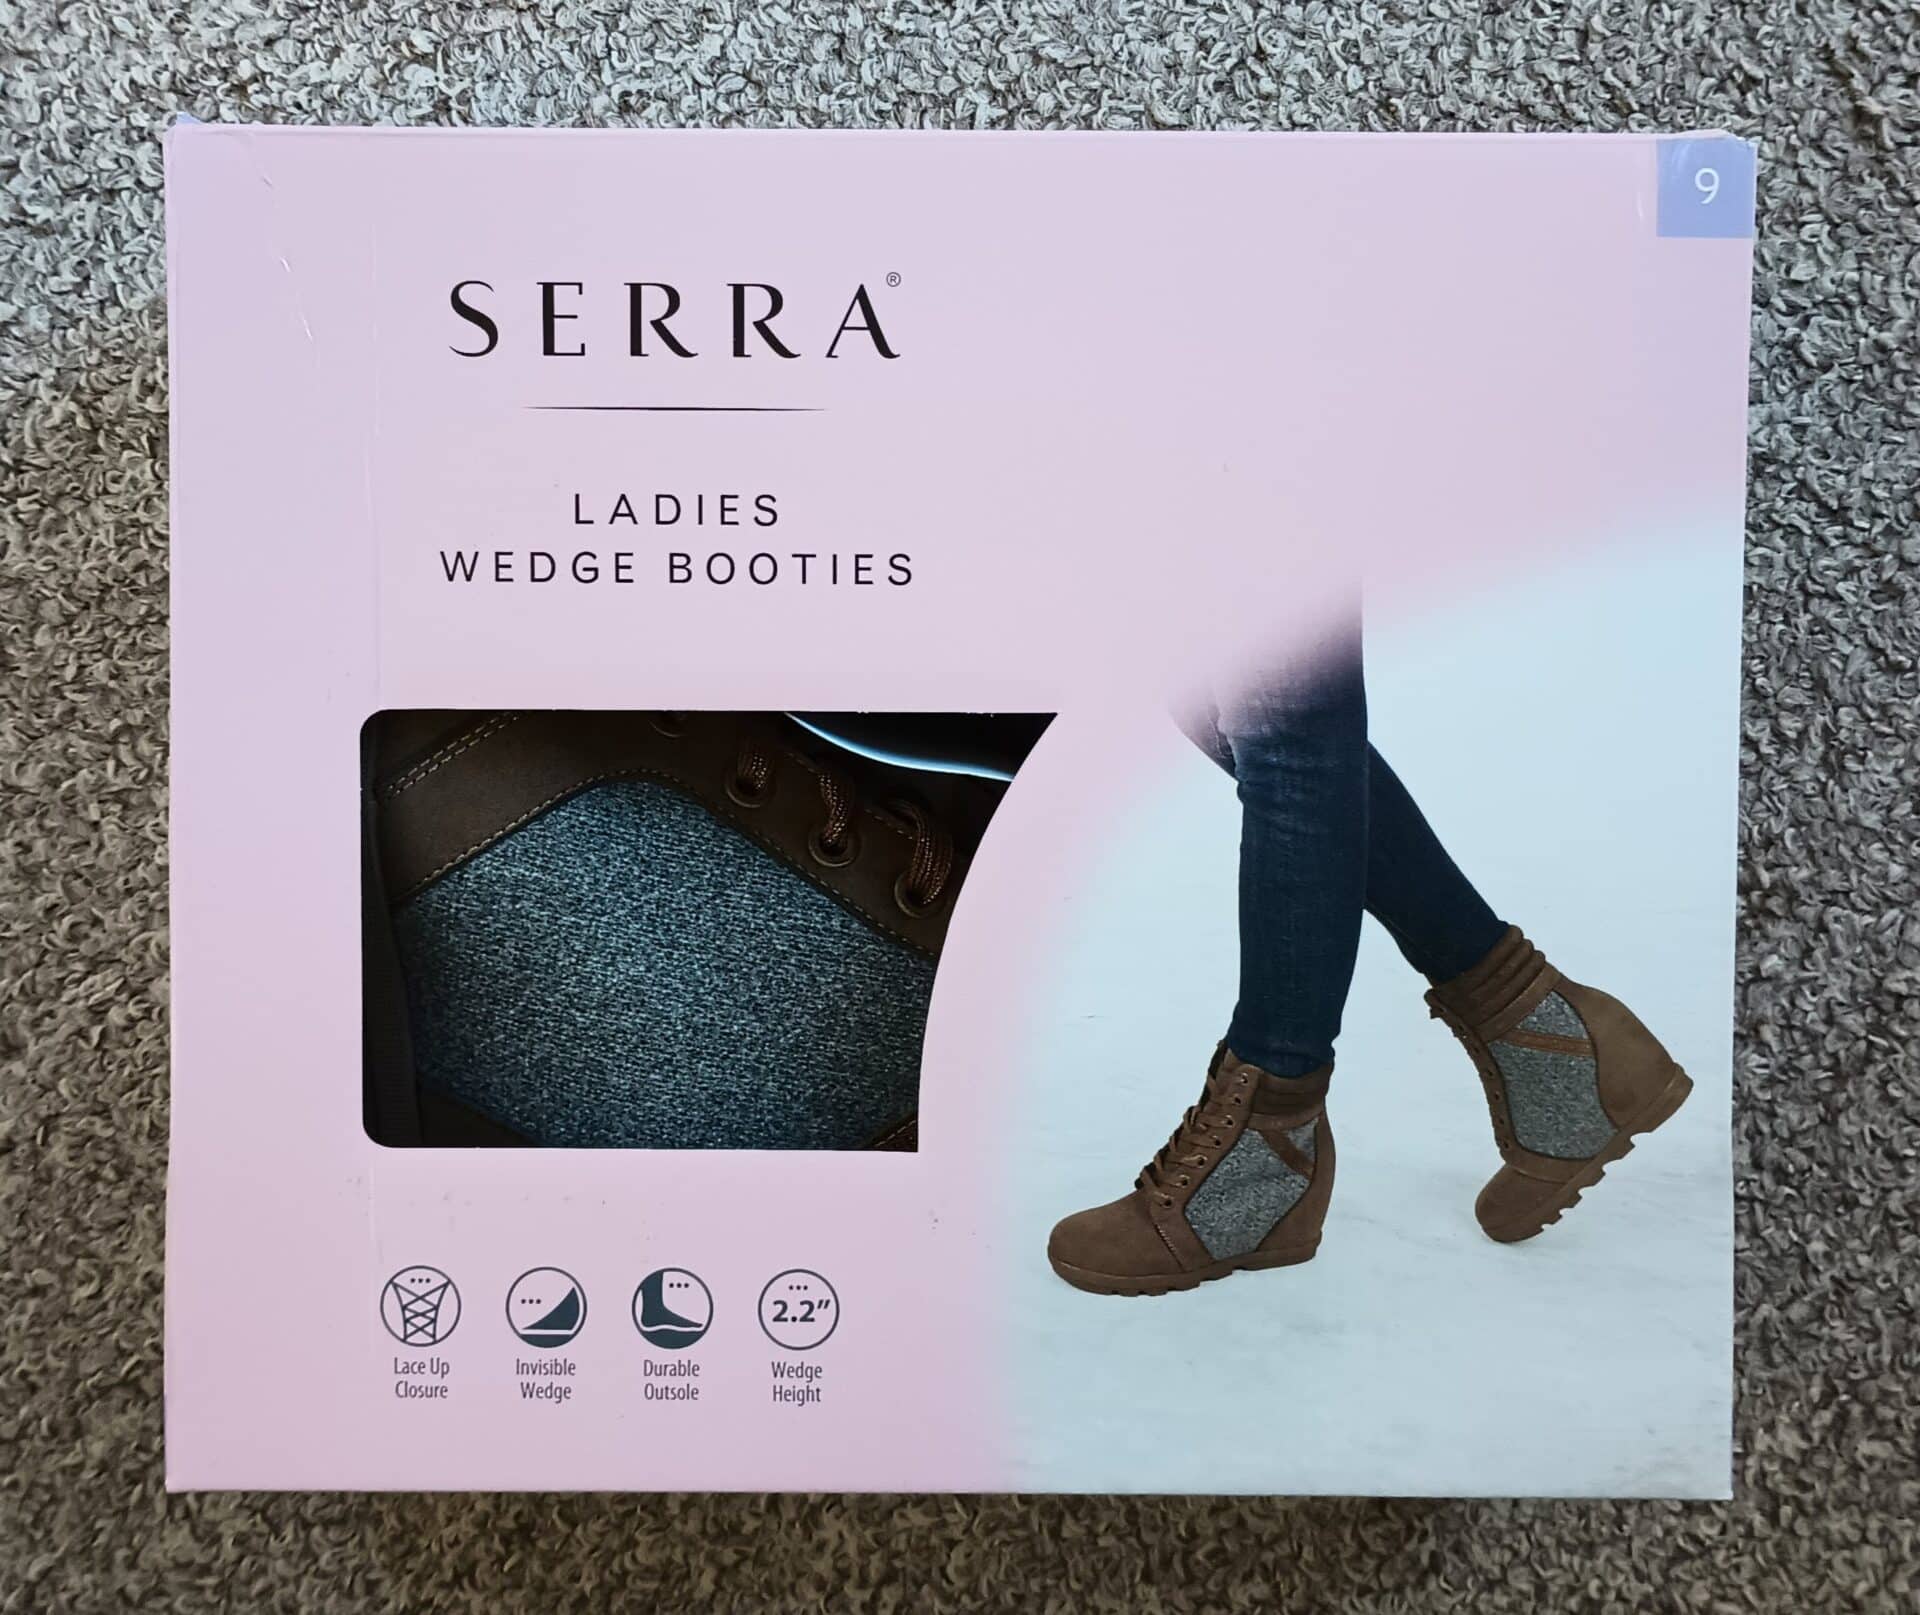 Serra Ladies Wedge Booties